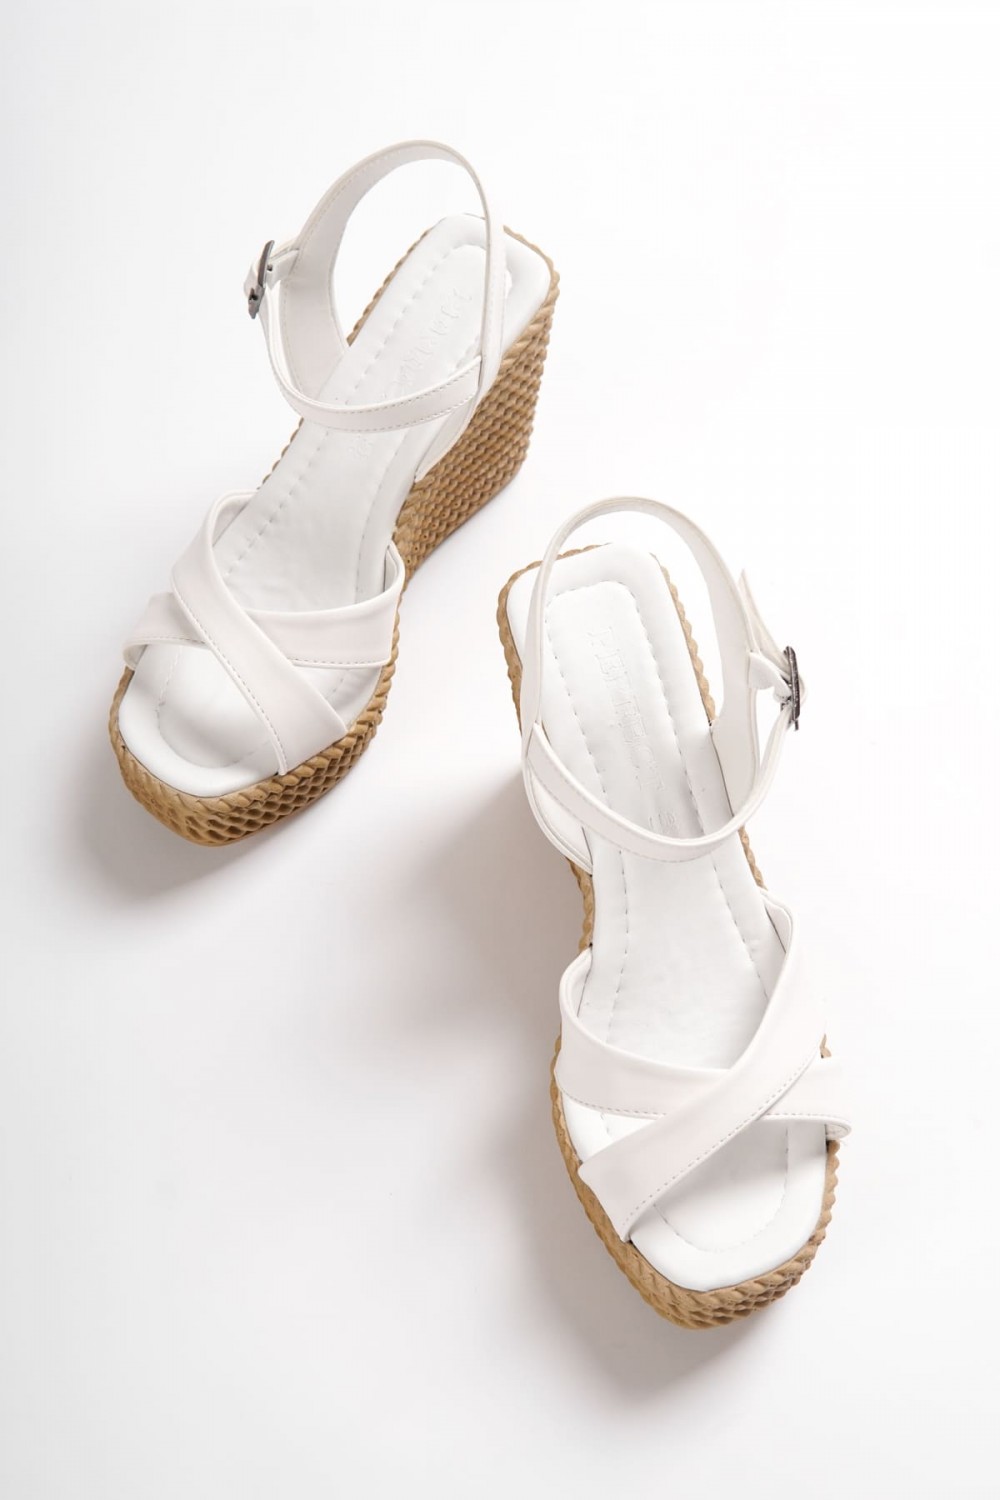 SOFIA Tokalı Lastikli Dolgu Topuklu Ortopedik Taban Hasır Görünümlü Kadın Sandalet KT Beyaz